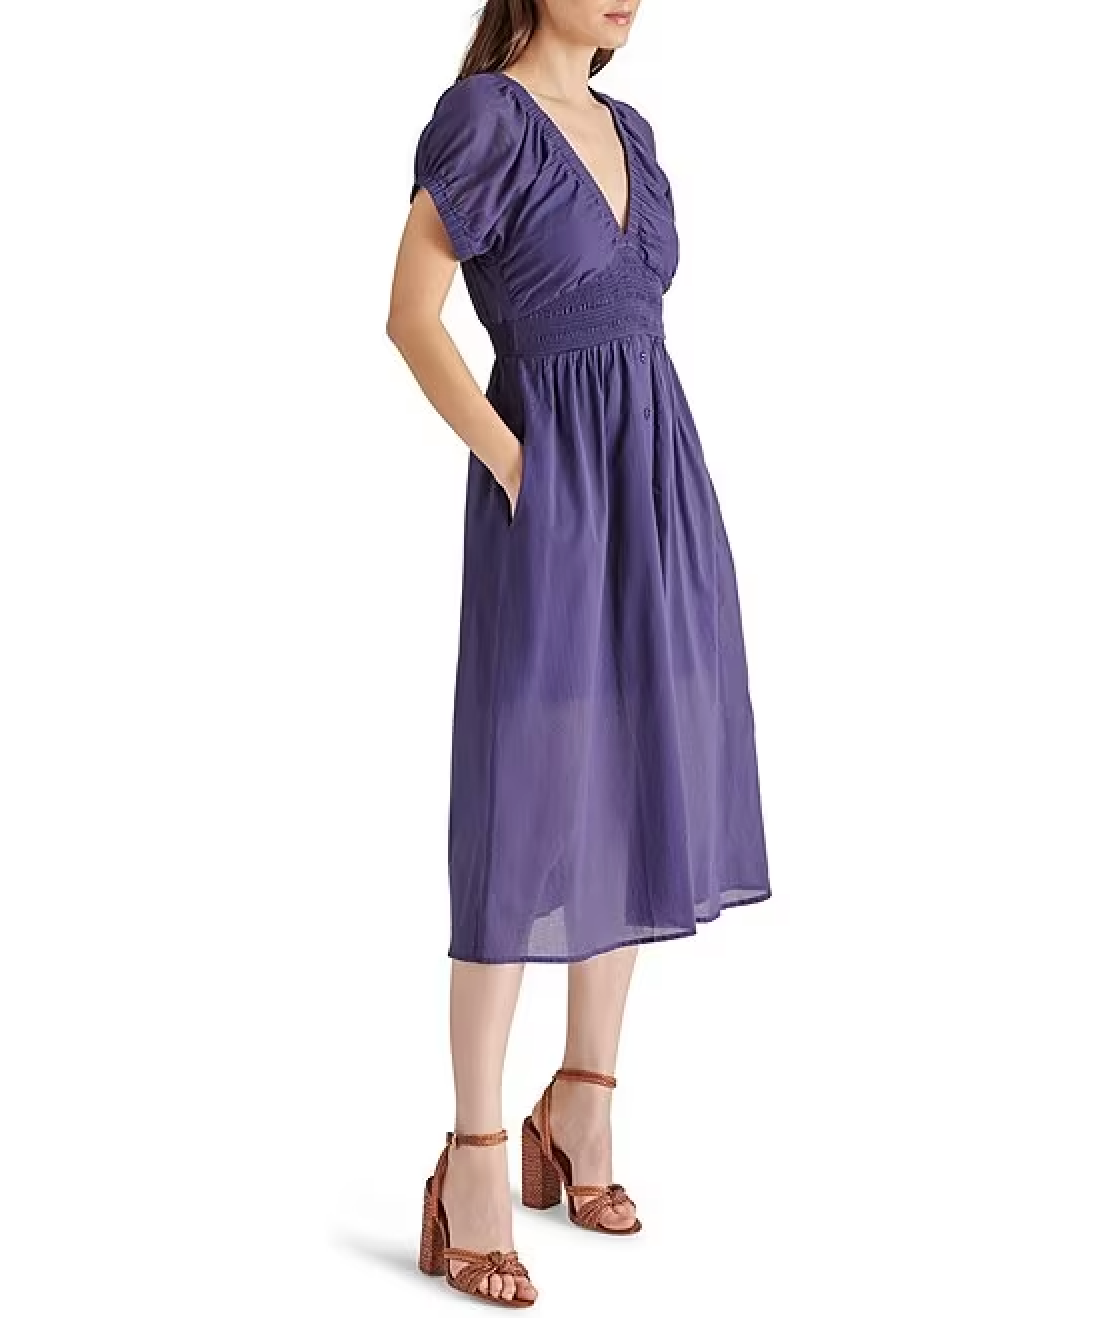 Tahlia Dress - Vintage Blue